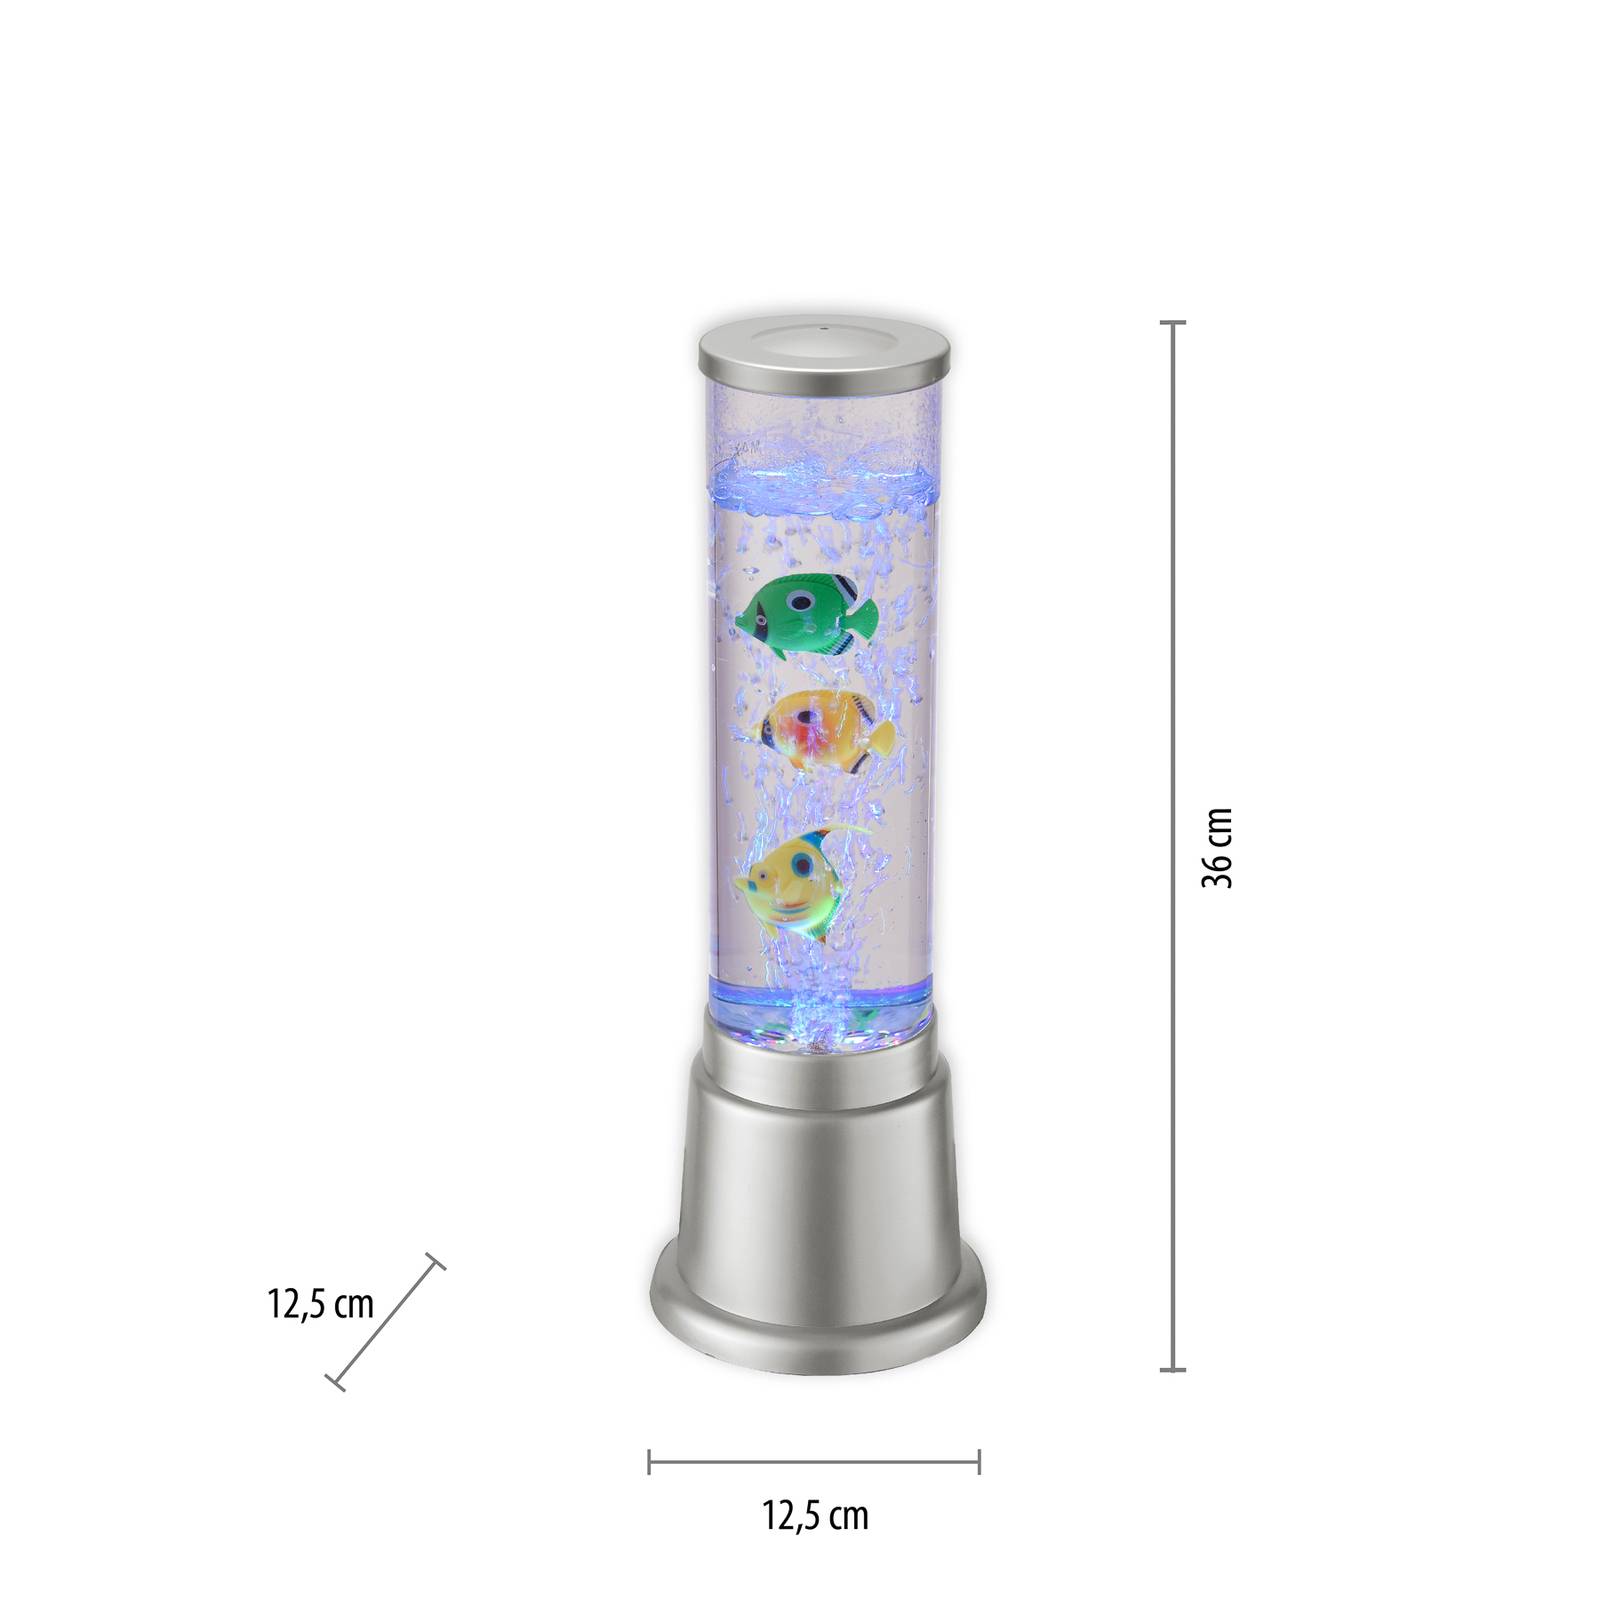 Ava vandsøjle med LED’er og fisk højde 36cm